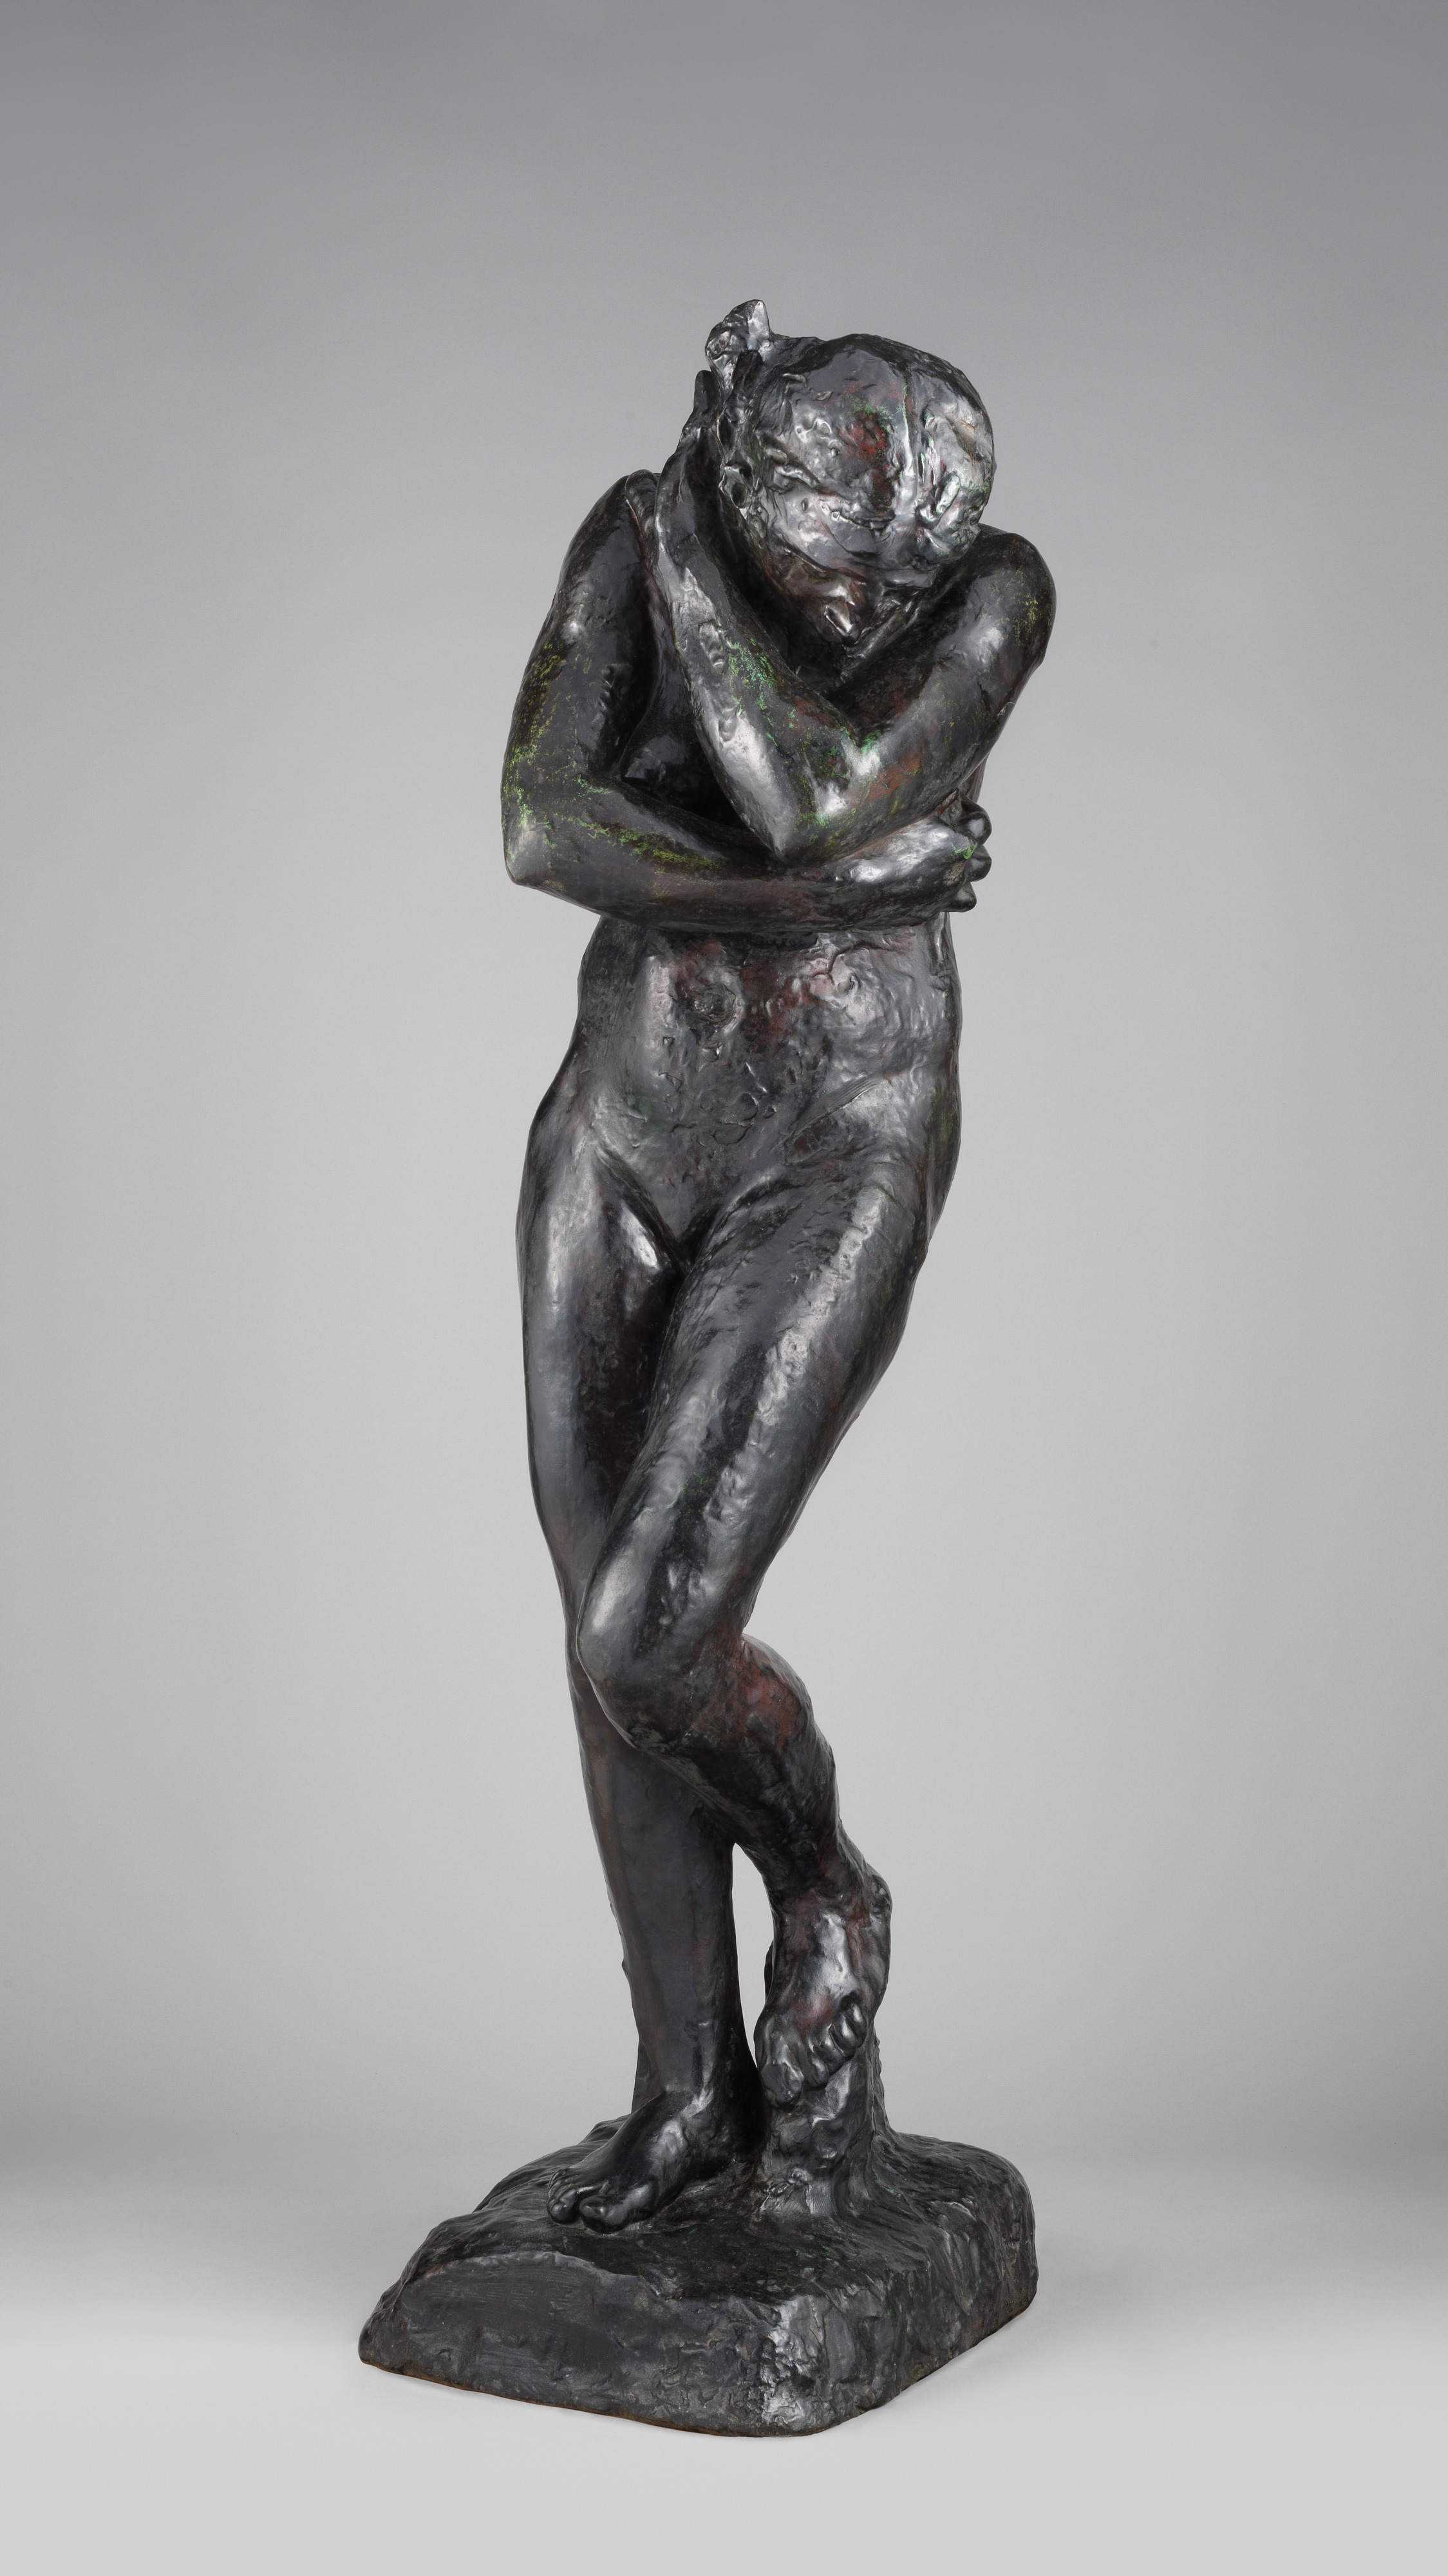 Eve Eva AUGUSTE RODIN Skulptur Parastone Museumsedition RO19 Figur 